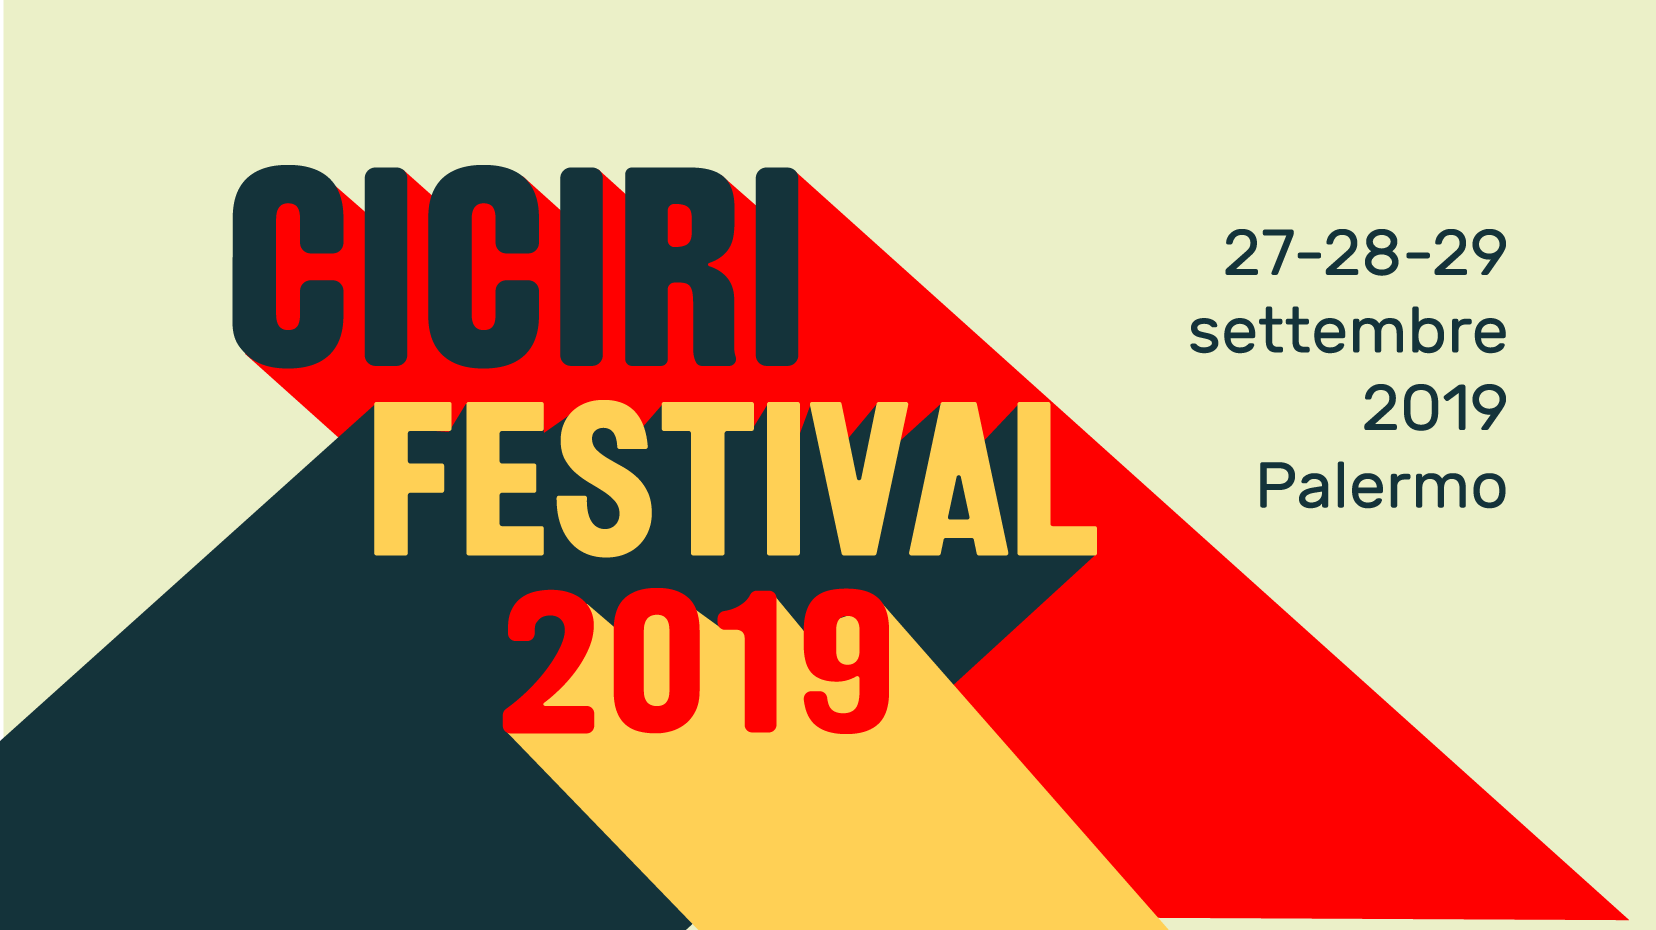 Ciciri Festival 2019